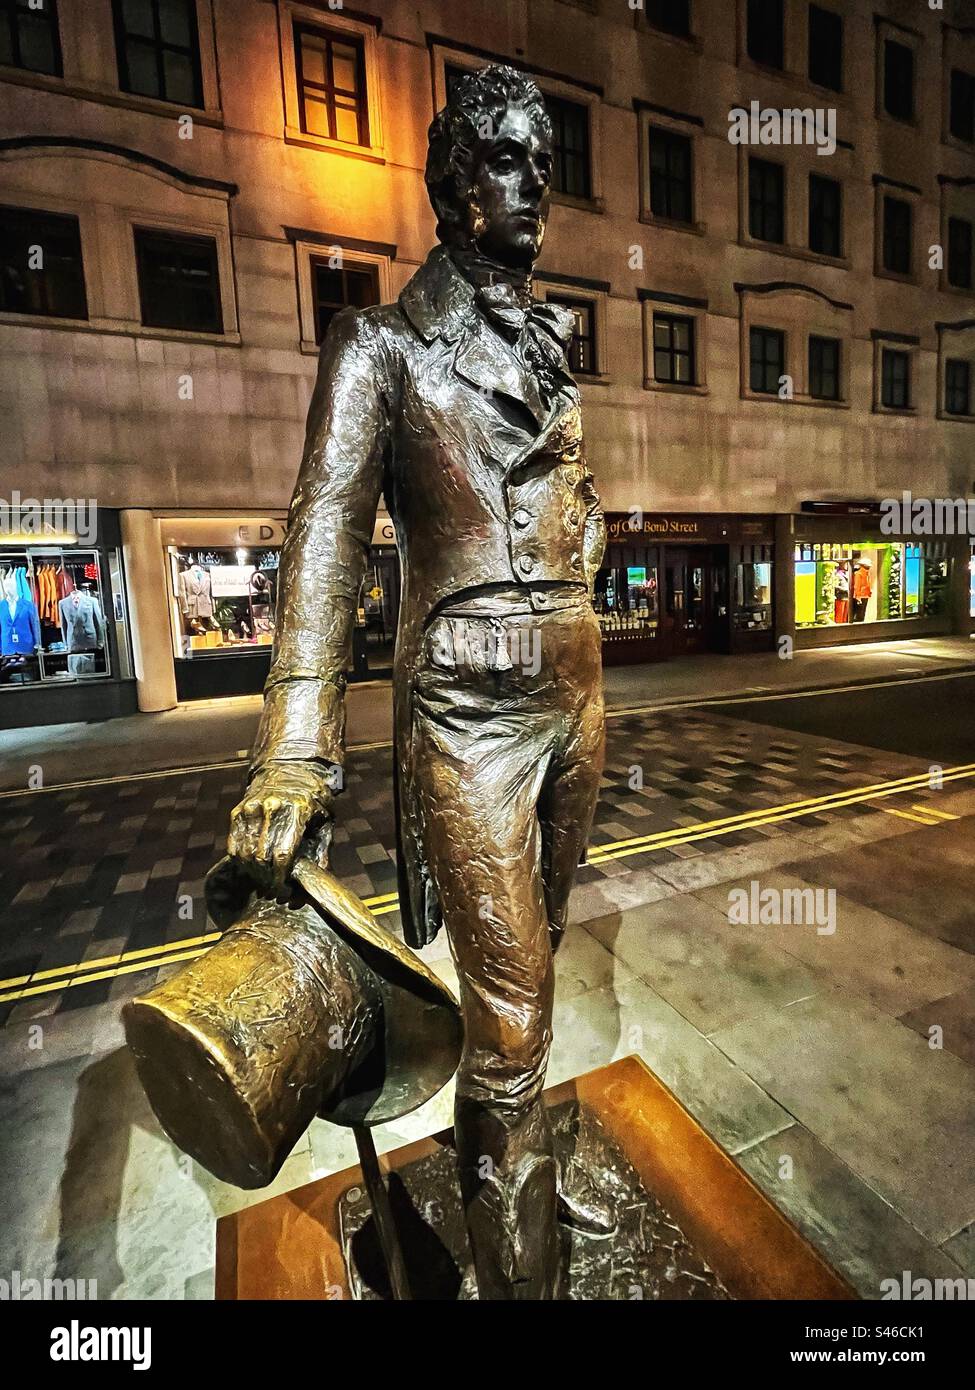 Beau Brummell statue in Jermyn Street, London - an important figure in Regency history. Sculptor: Irena Sedlecka seen at night Stock Photo